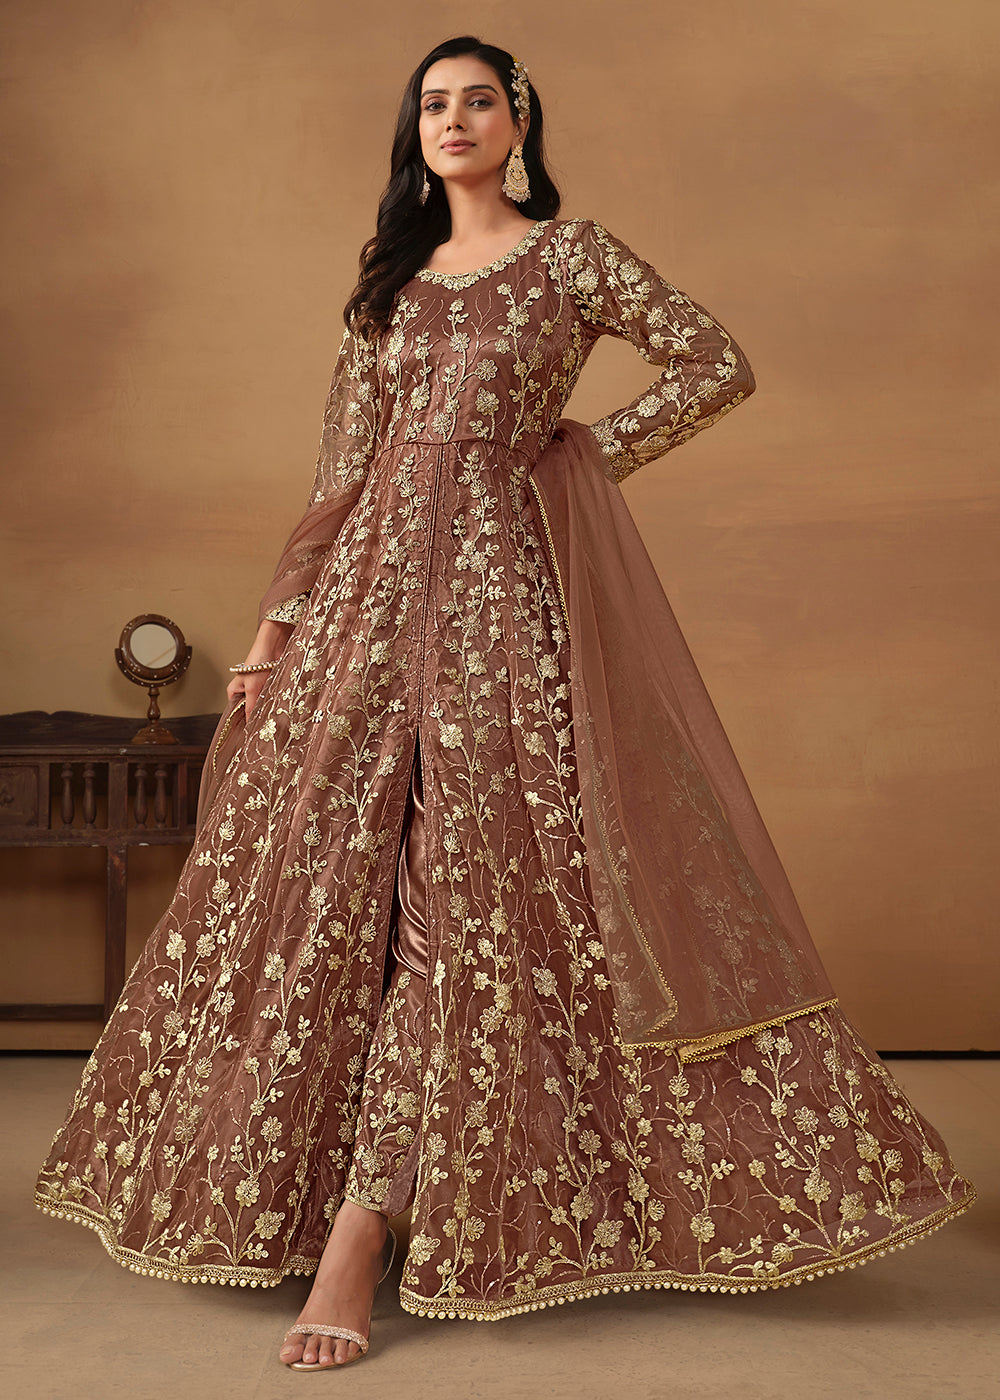 Anarkali Suit - Salwar Kameez, Gowns for Weddings & More!